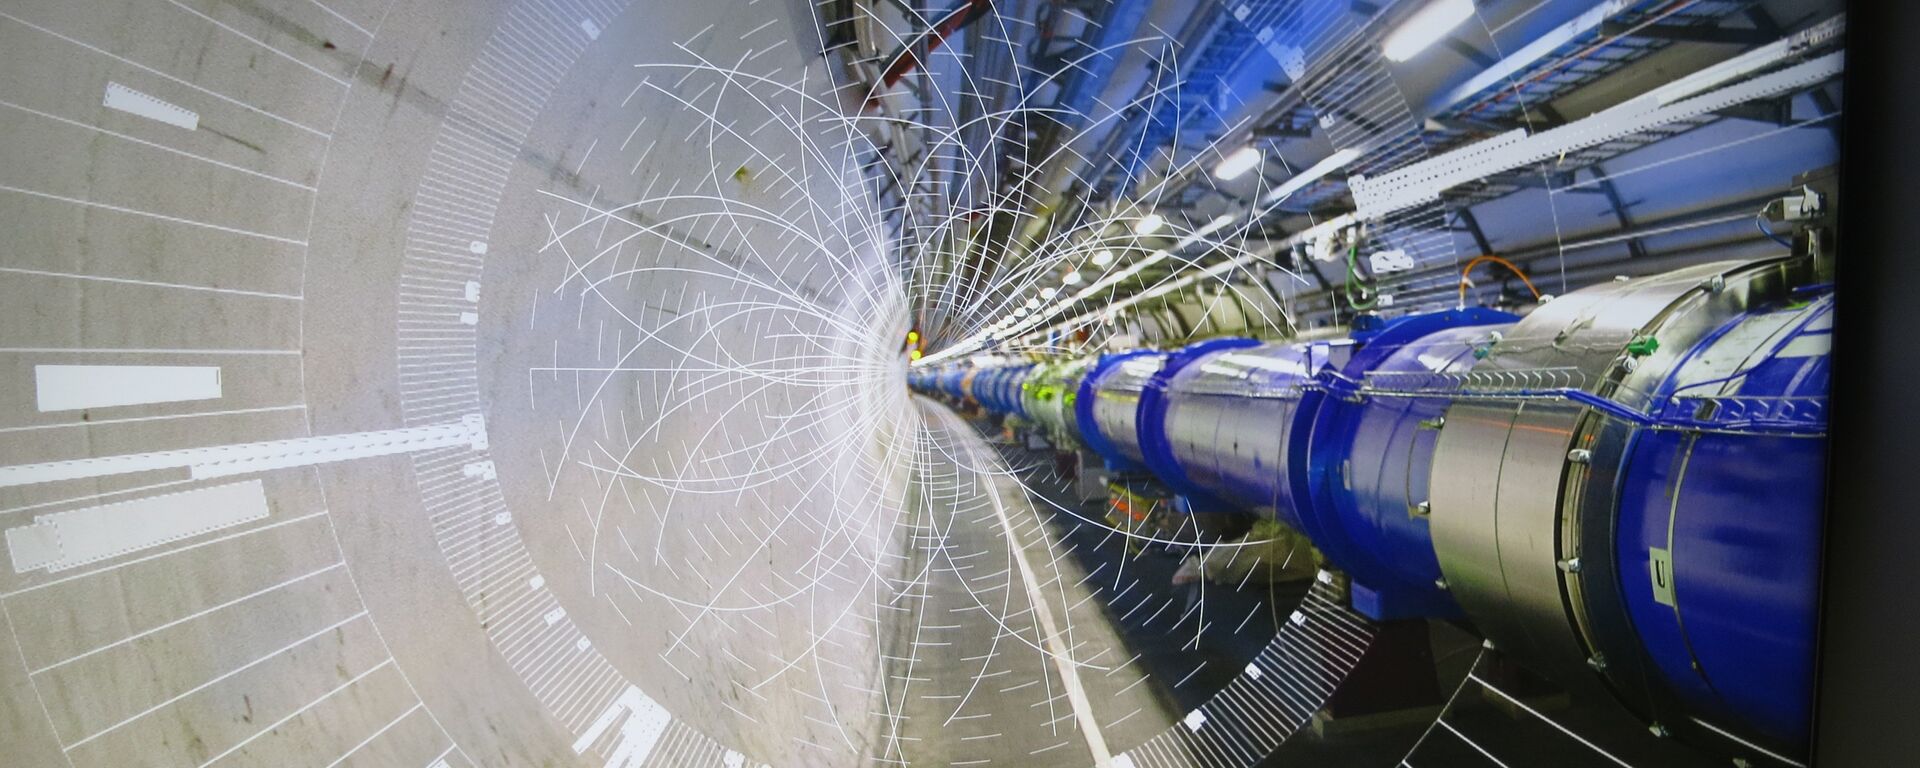 Evropska organizacija za nuklearno istraživanje, poznatiji kao CERN je najveći centar za istraživanje elementarnih čestica. - Sputnik Srbija, 1920, 24.01.2022